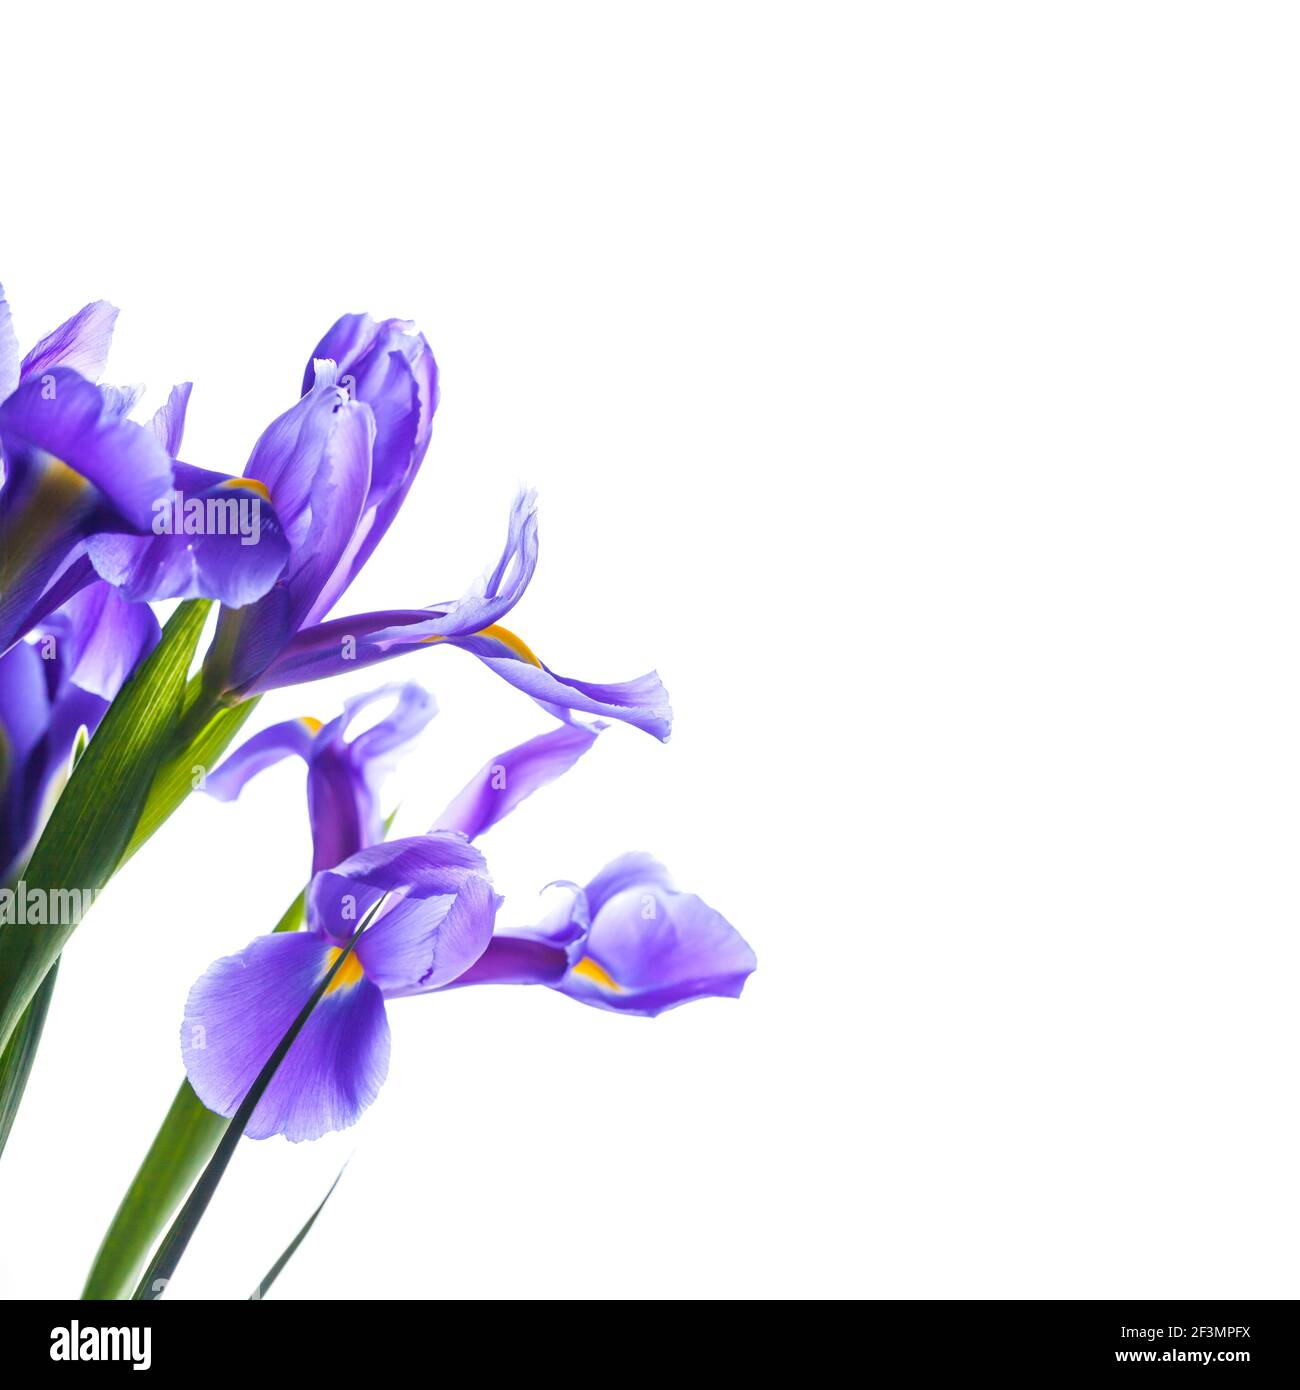 Japanese irises. Decorative flowers isolated on square white ...